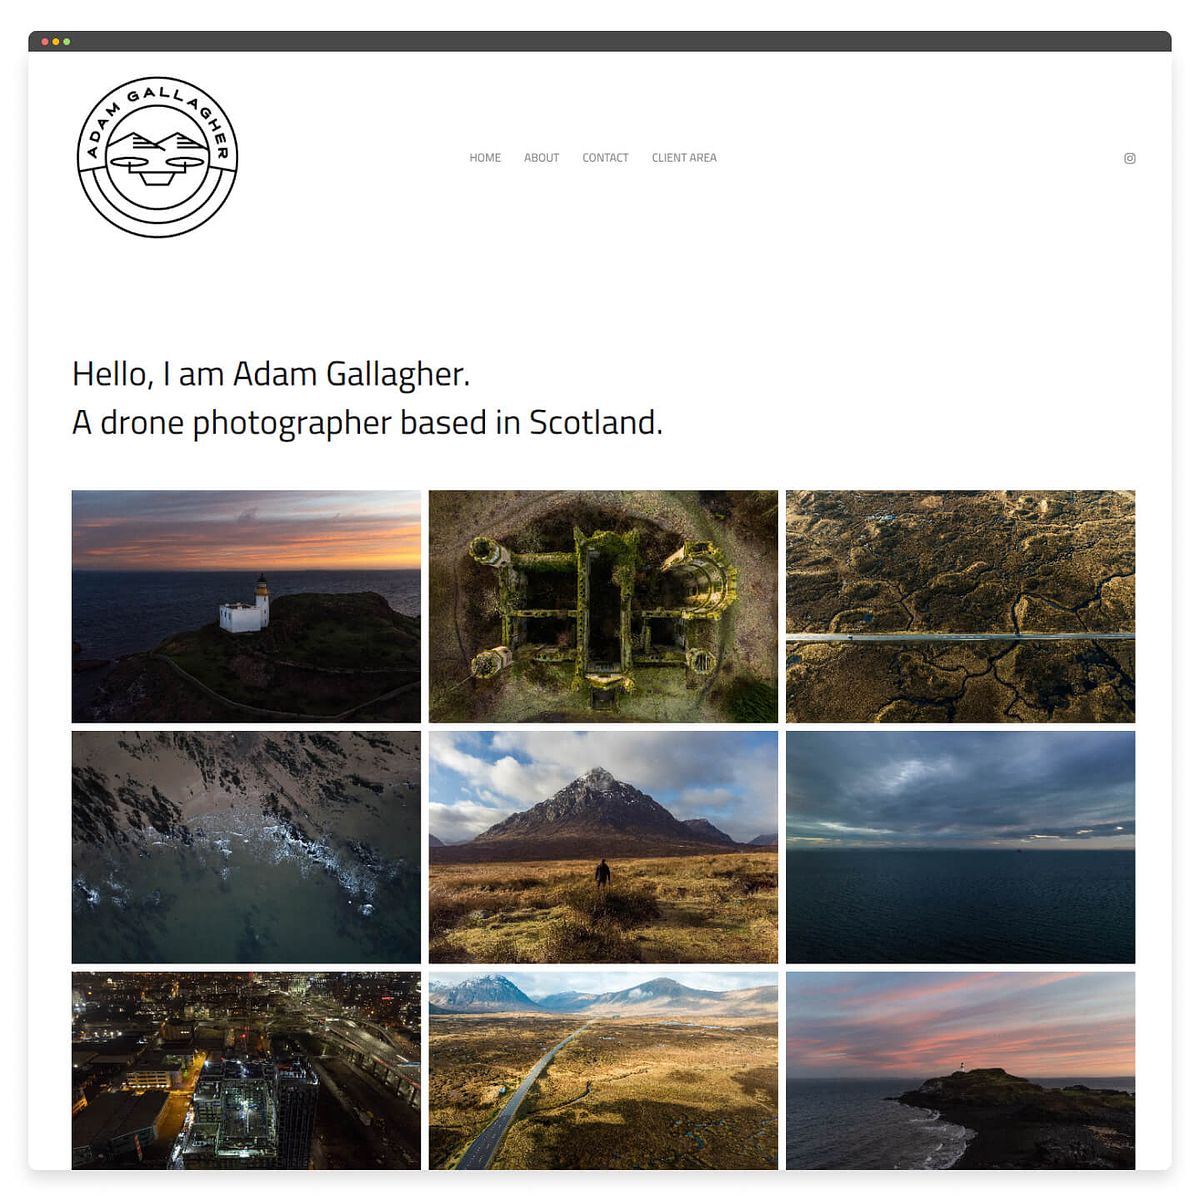 Projekt strony internetowej poświęconej fotografii dronowej Adama Gallaghera